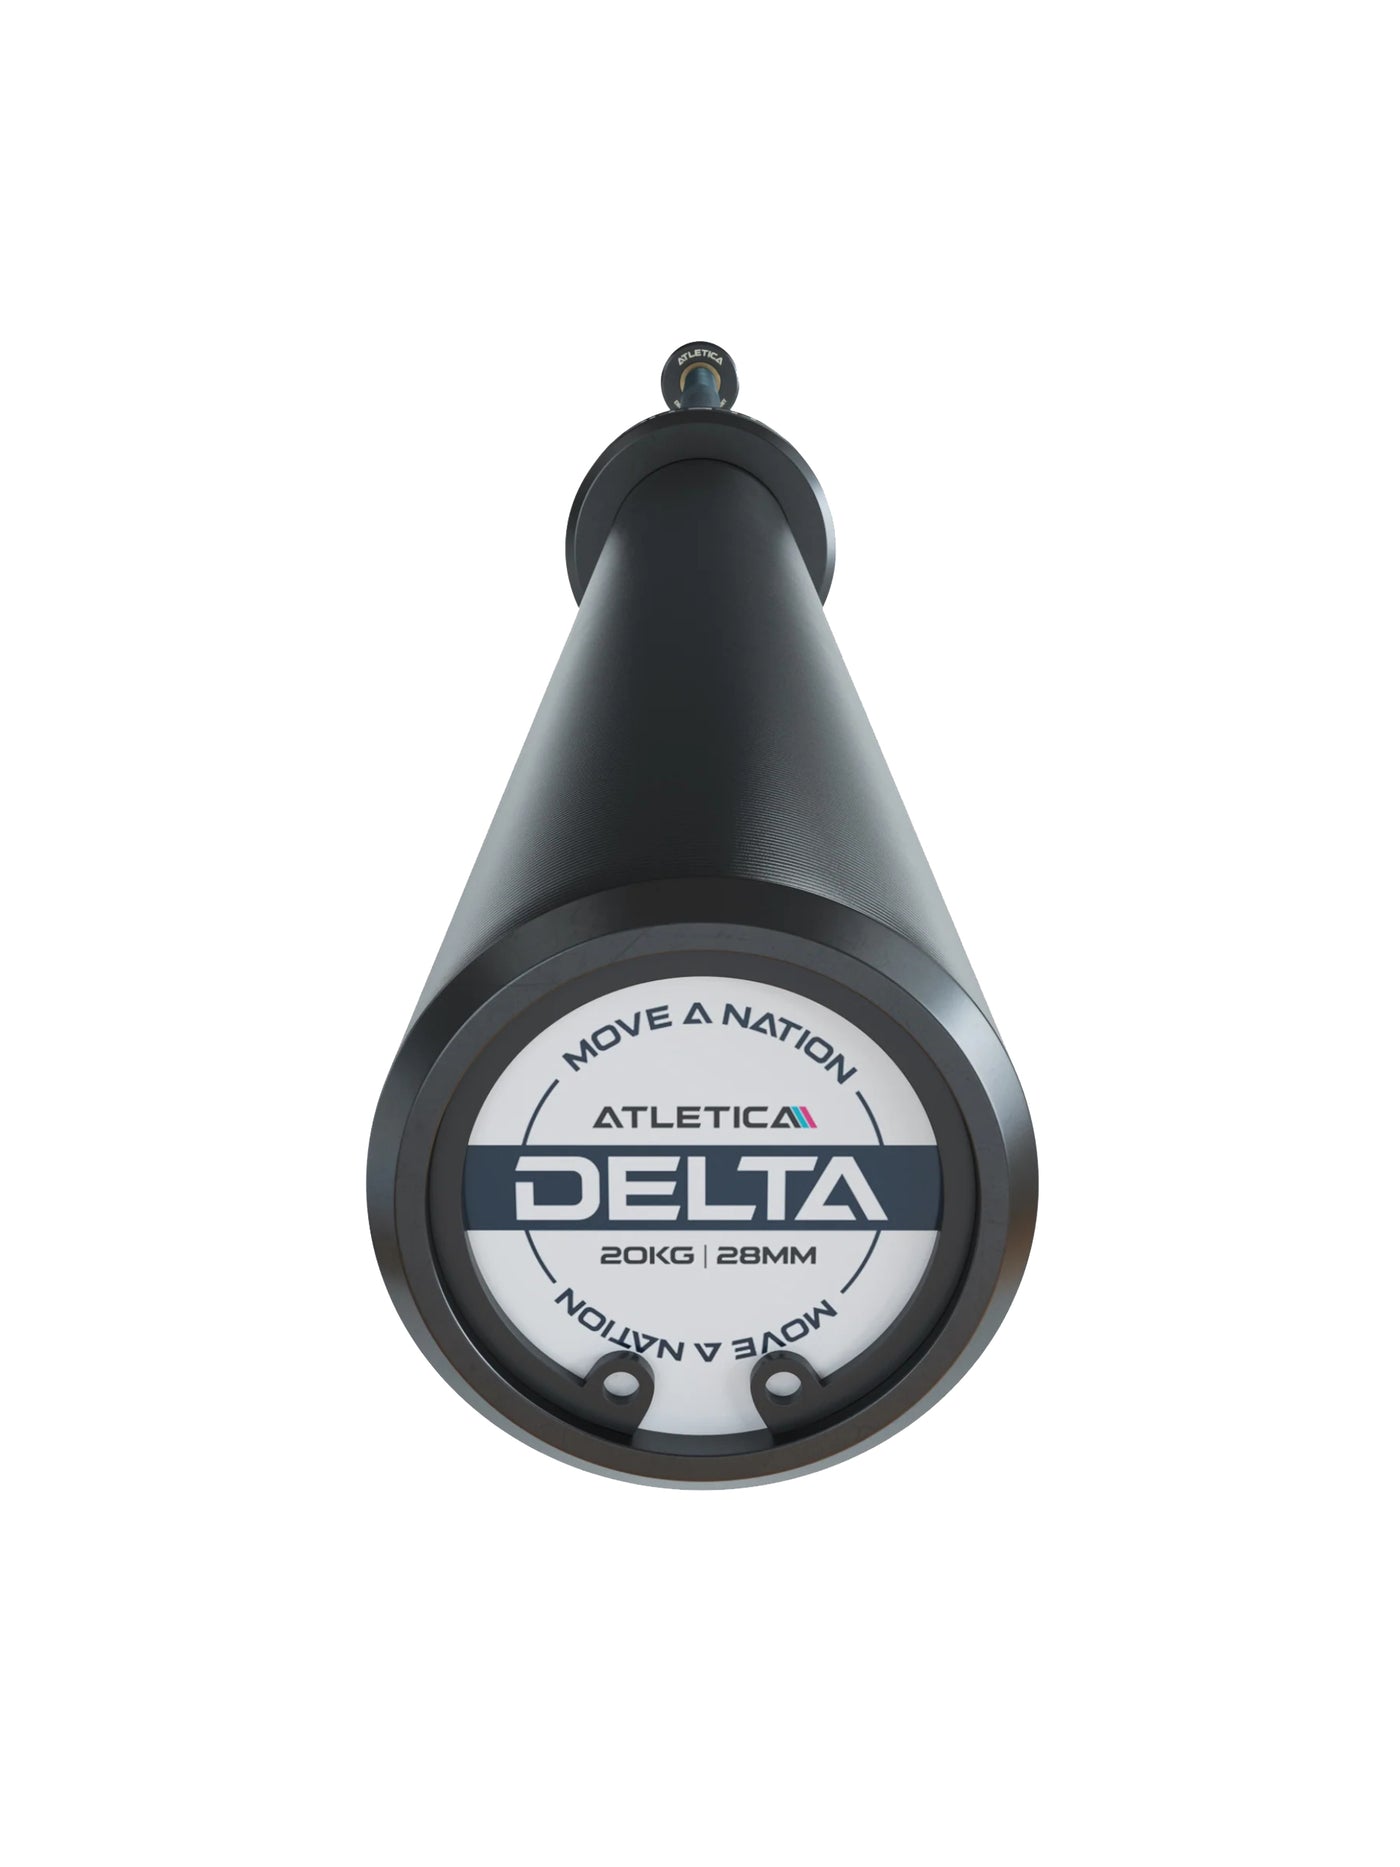 Delta Set: Delta Hybrid Stange| 75kg Hantelscheiben | Alu-Hantelverschlüsse | Für Gewichtheben, Powerlifting und CrossFit | Ø 50mm, #delta-hybrid-barbell-farbe_dark-blue